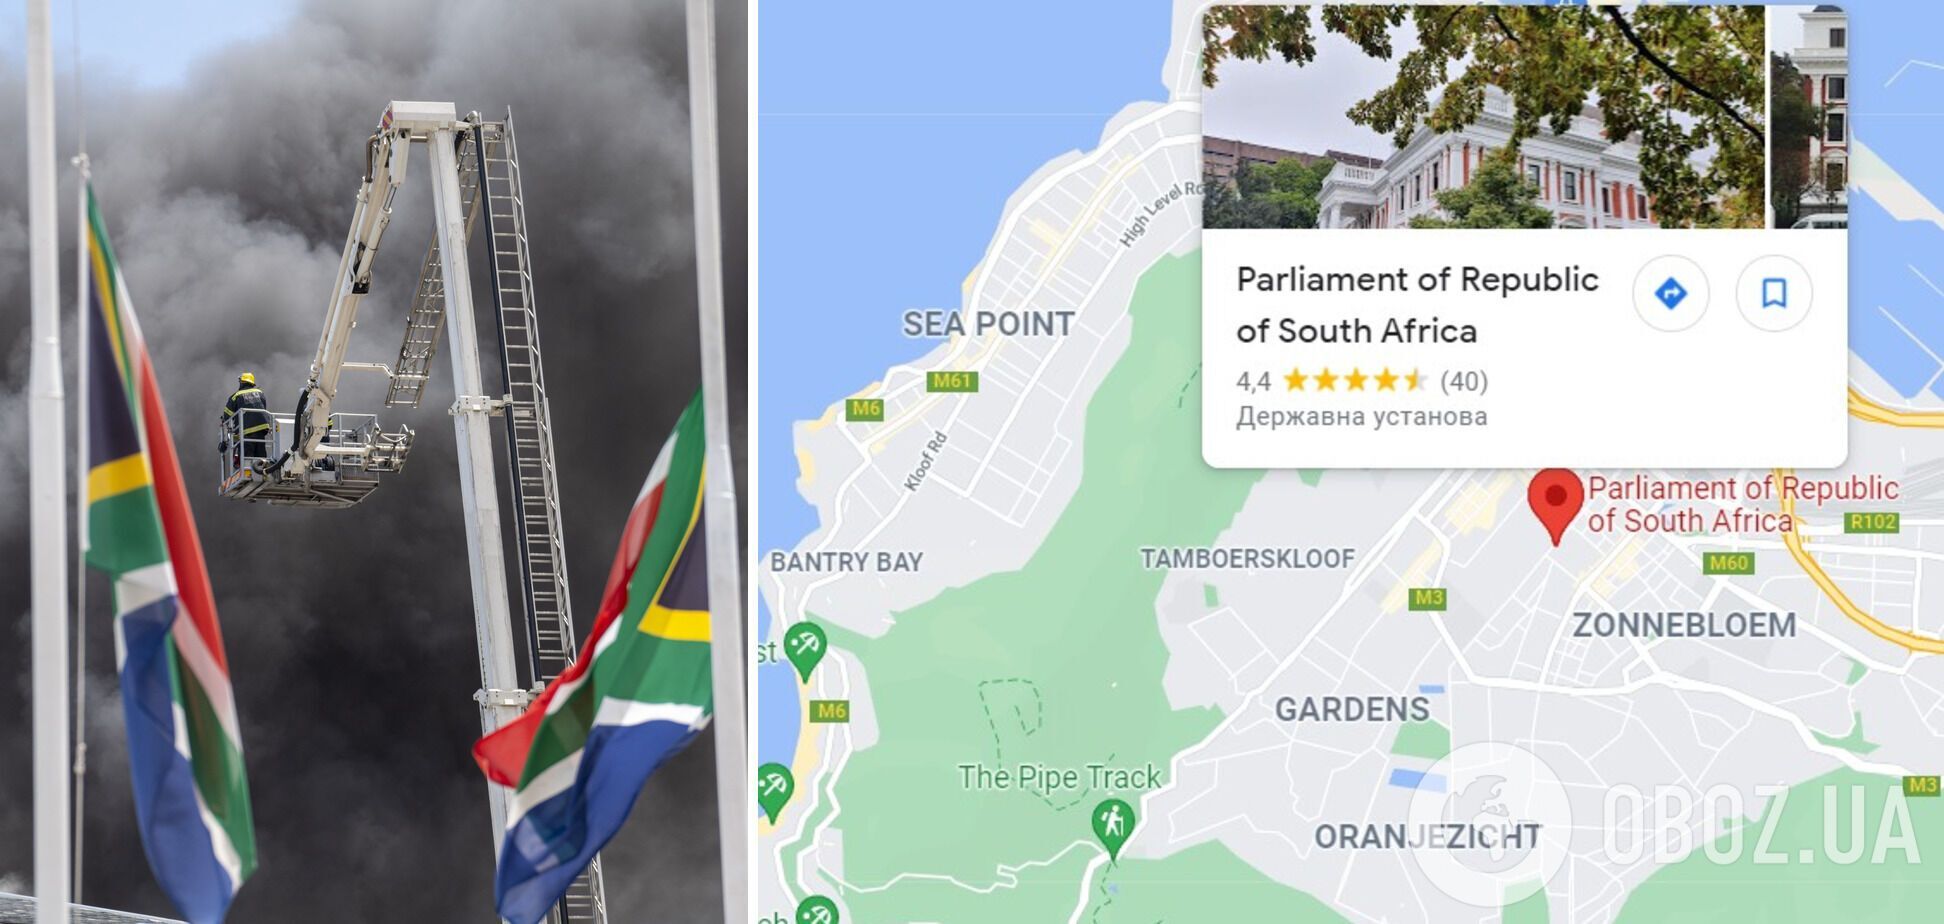 У будівлі парламенту ПАР знову спалахнула пожежа, загроза обвалення зросла. Фото і відео